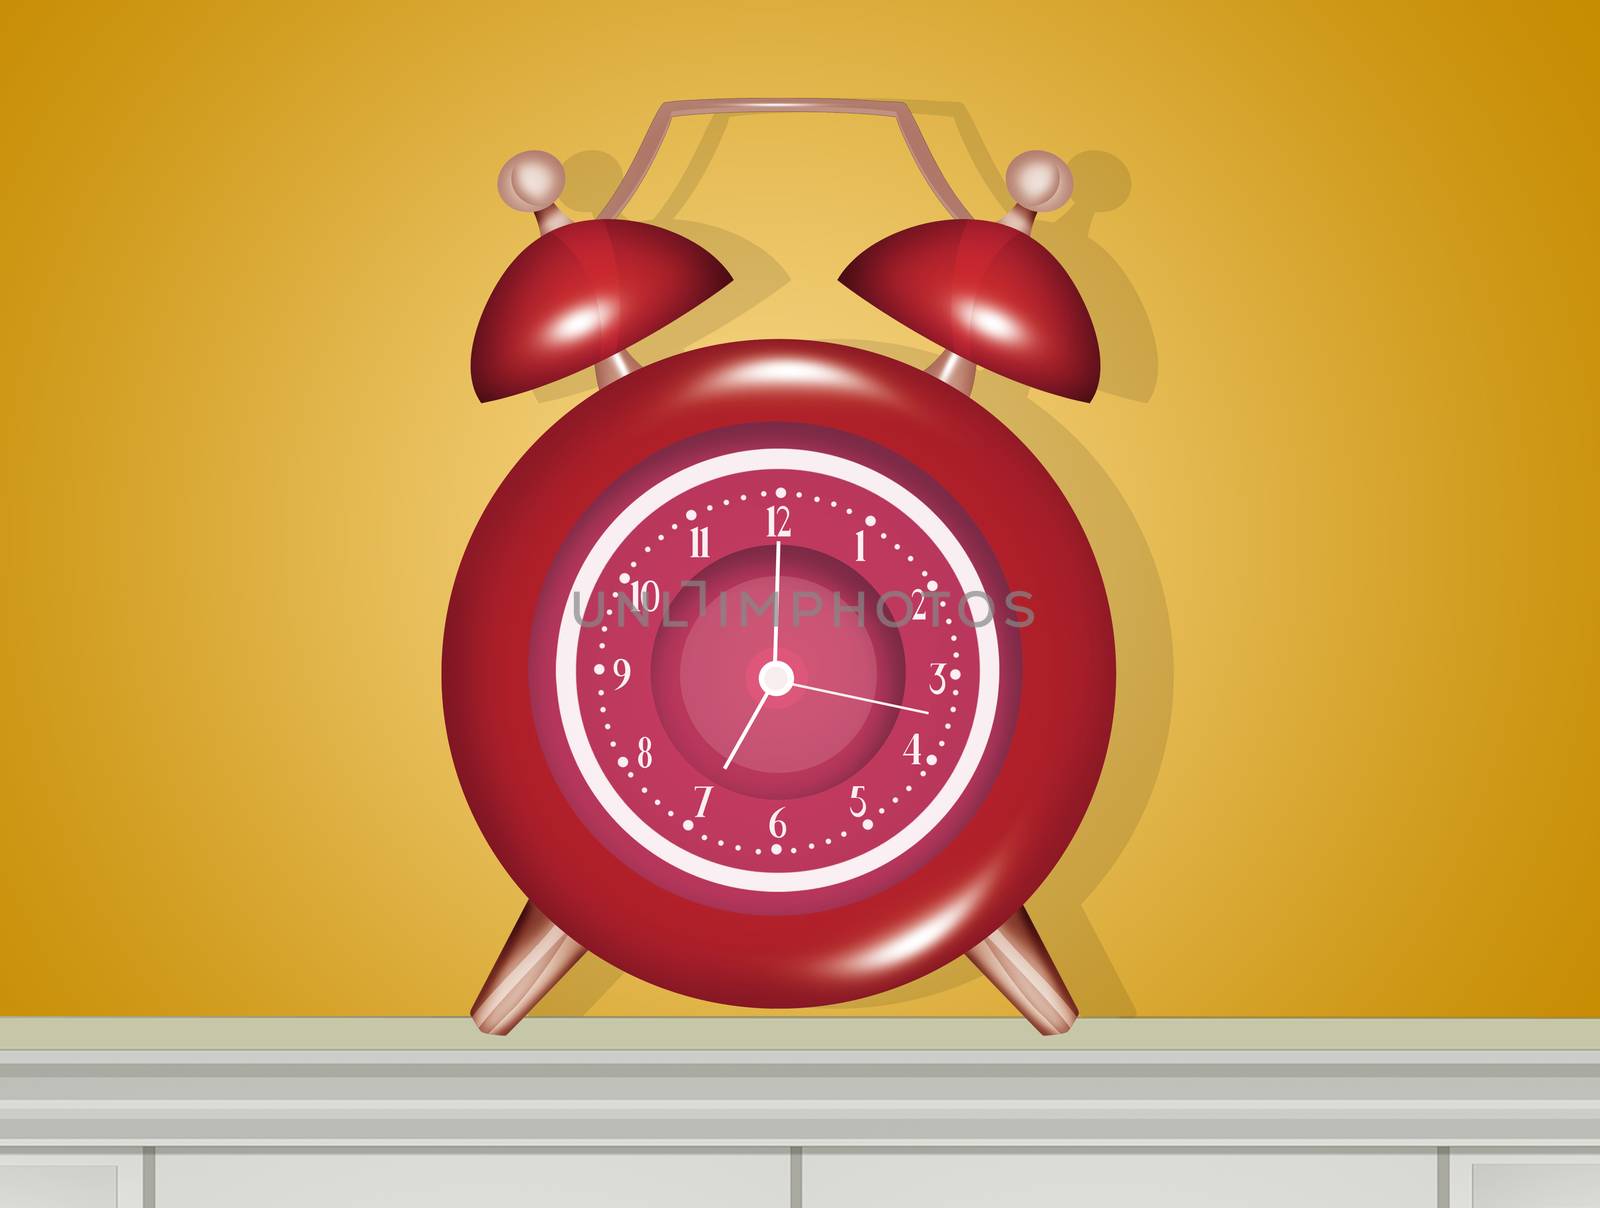 illustration of bedside alarm clock